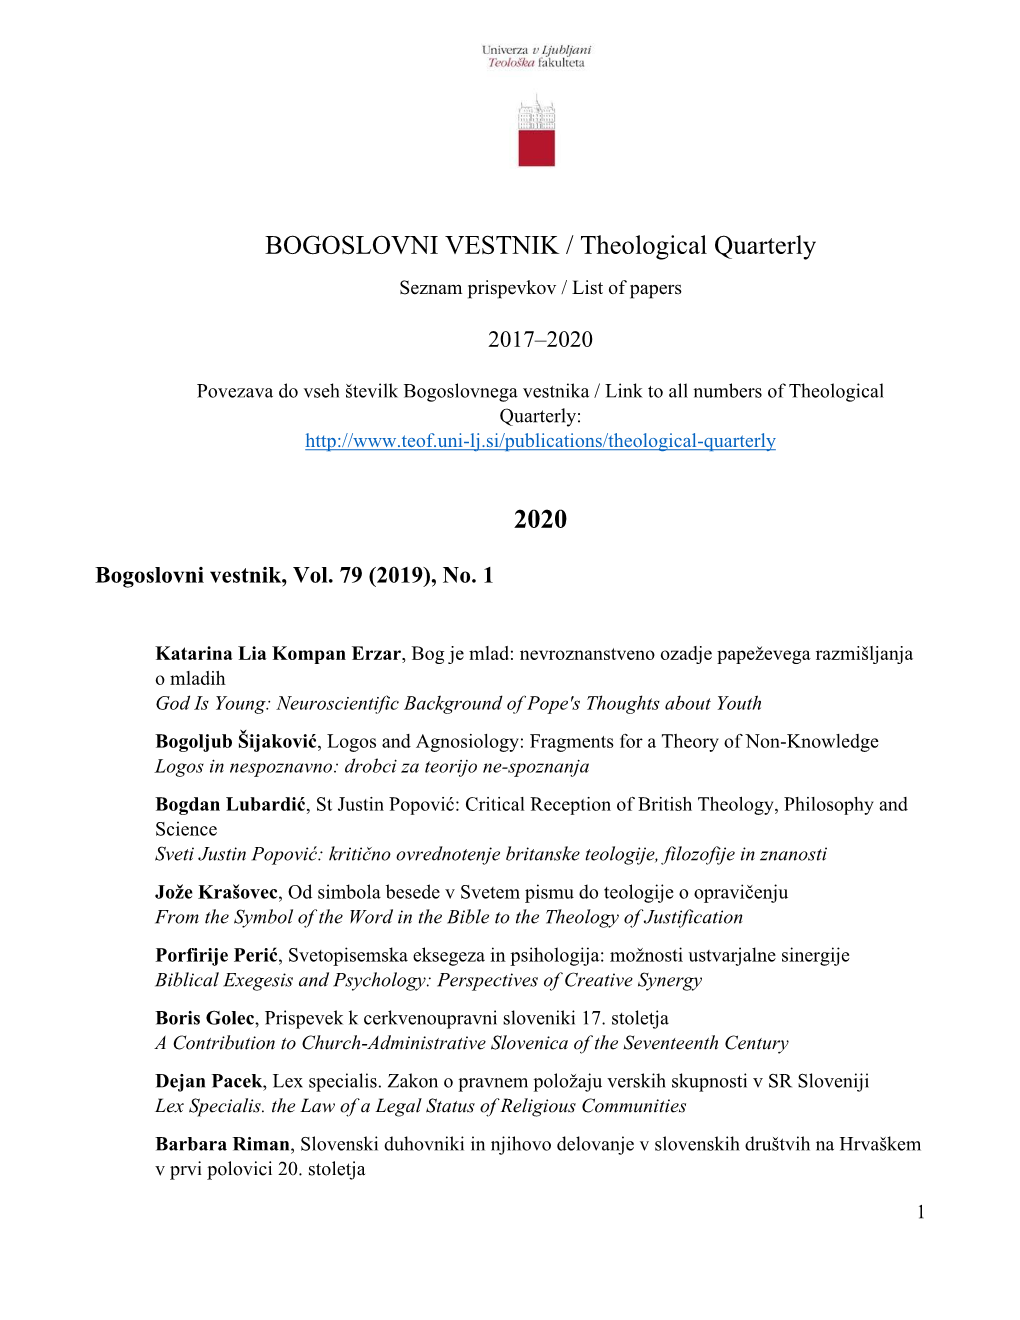 BOGOSLOVNI VESTNIK / Theological Quarterly 2020